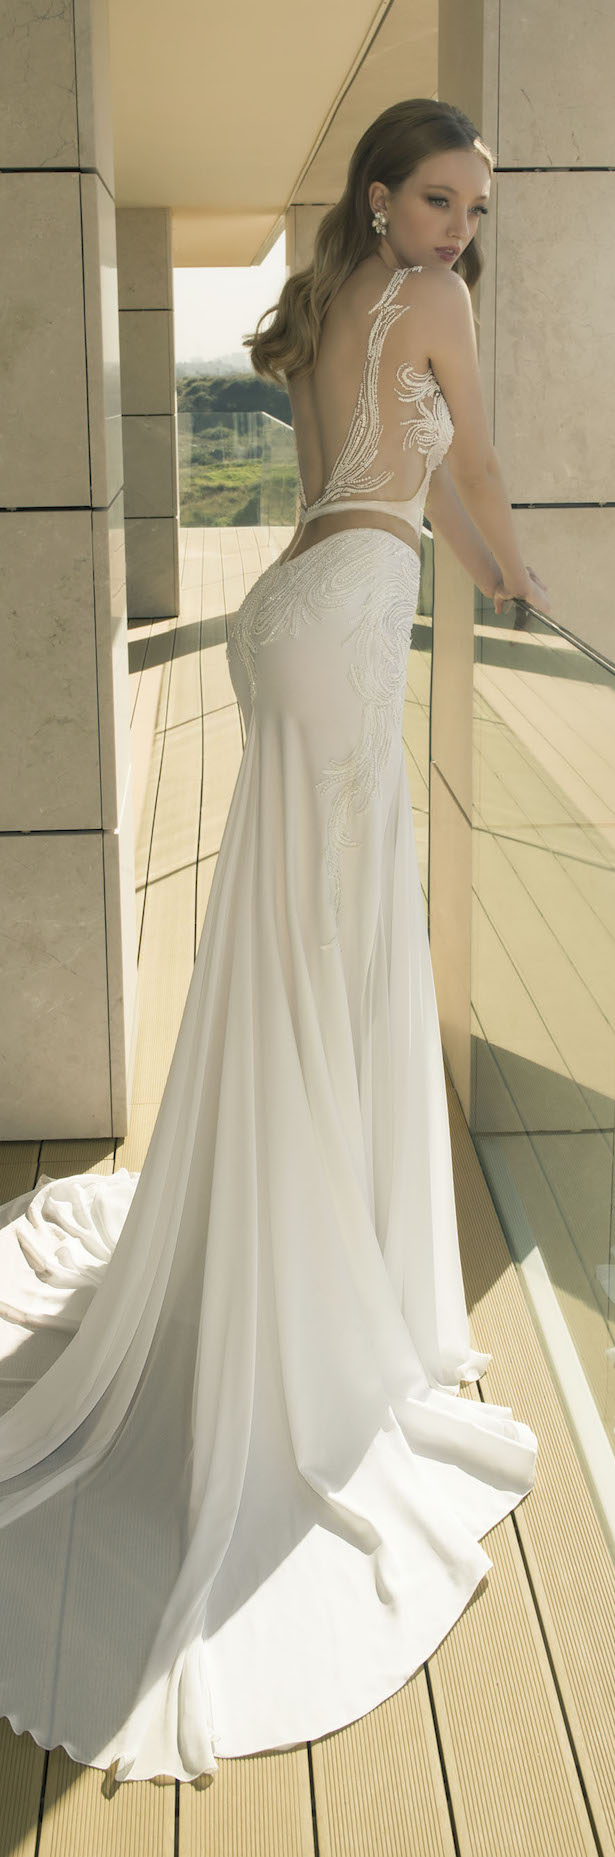 30 Elegant Beach Wedding Dresses Ideas  Wohh Wedding